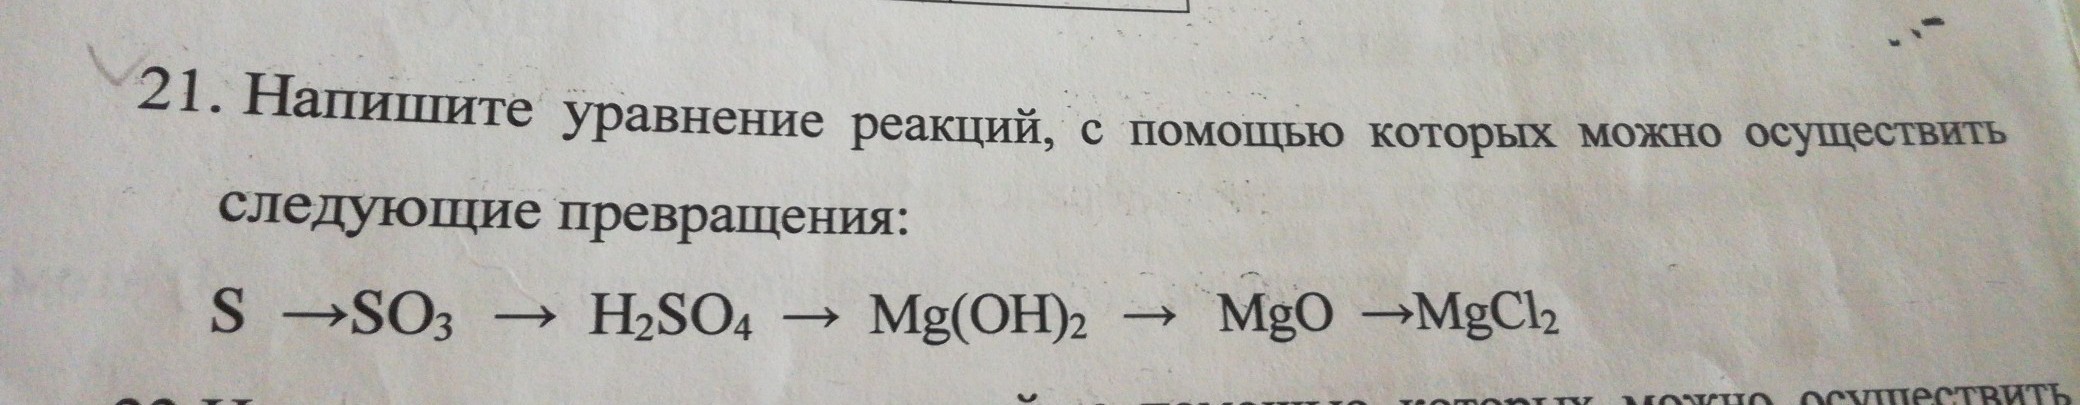 Запишите уравнения реакций с помощью которых можно осуществить превращения согласно схеме s mgs so2